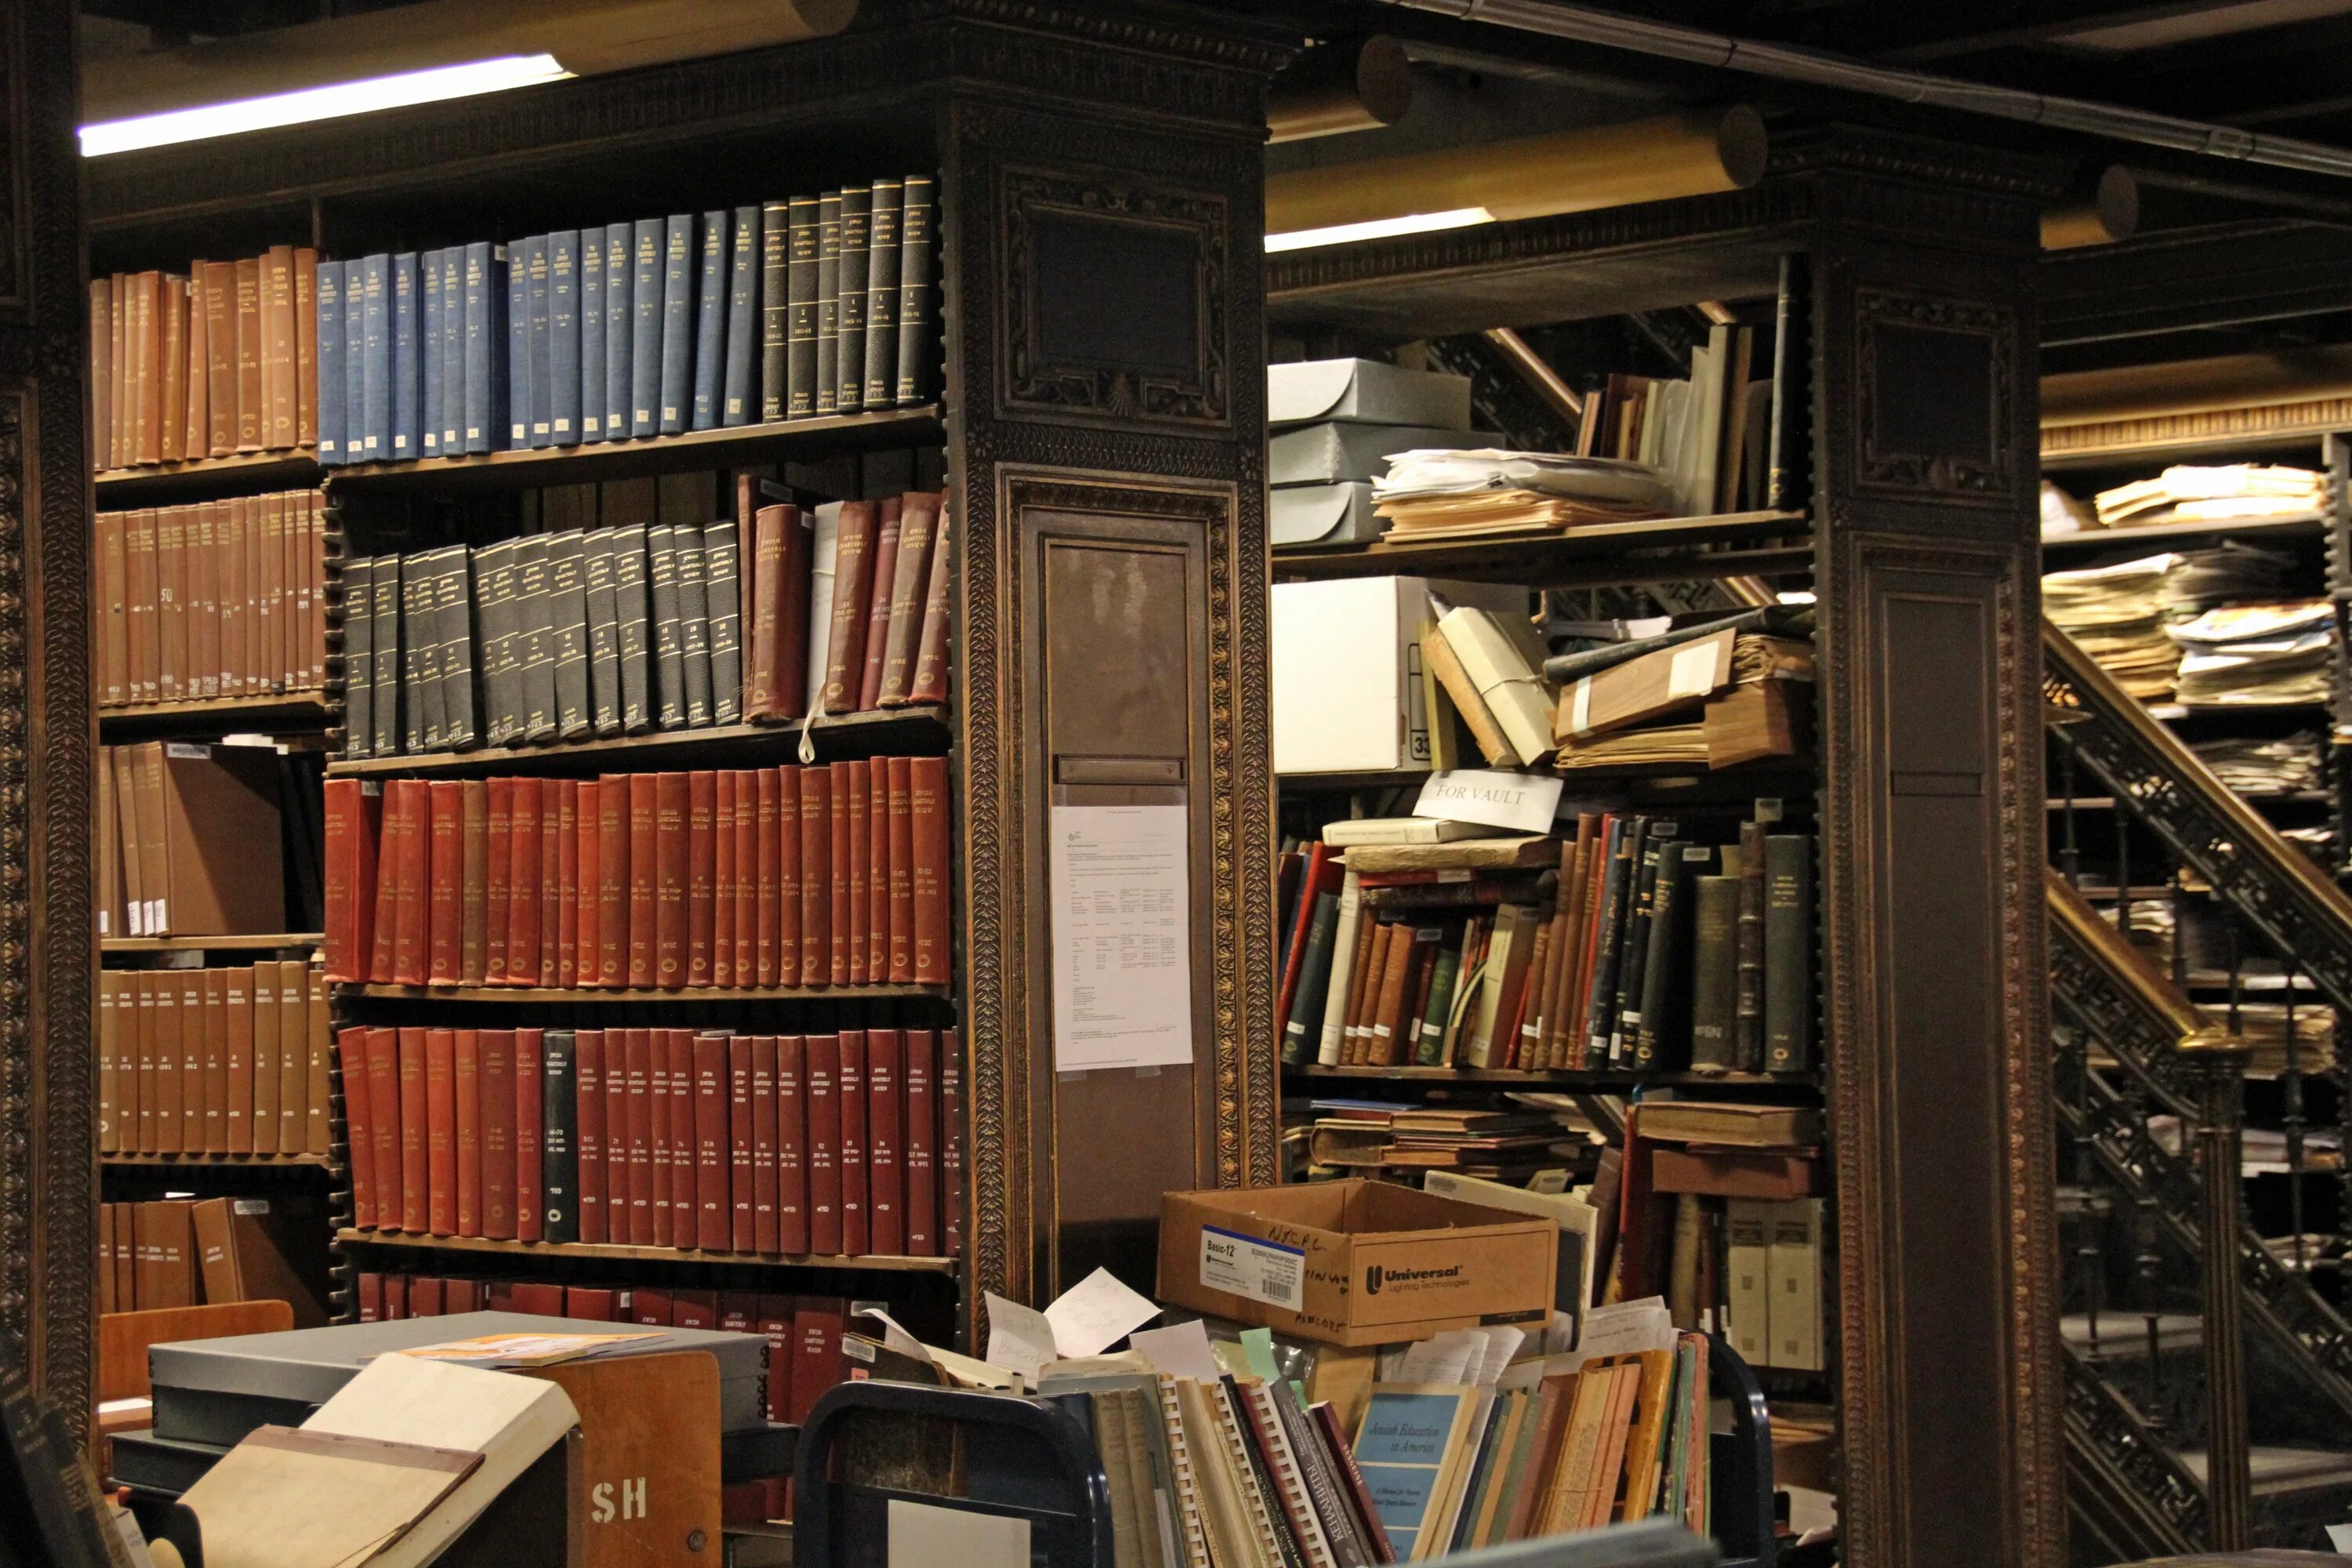 Library статьи. Шкаф для книг. Старый шкаф с книгами. Стеллажи для книг в библиотеку. Полка для книг.